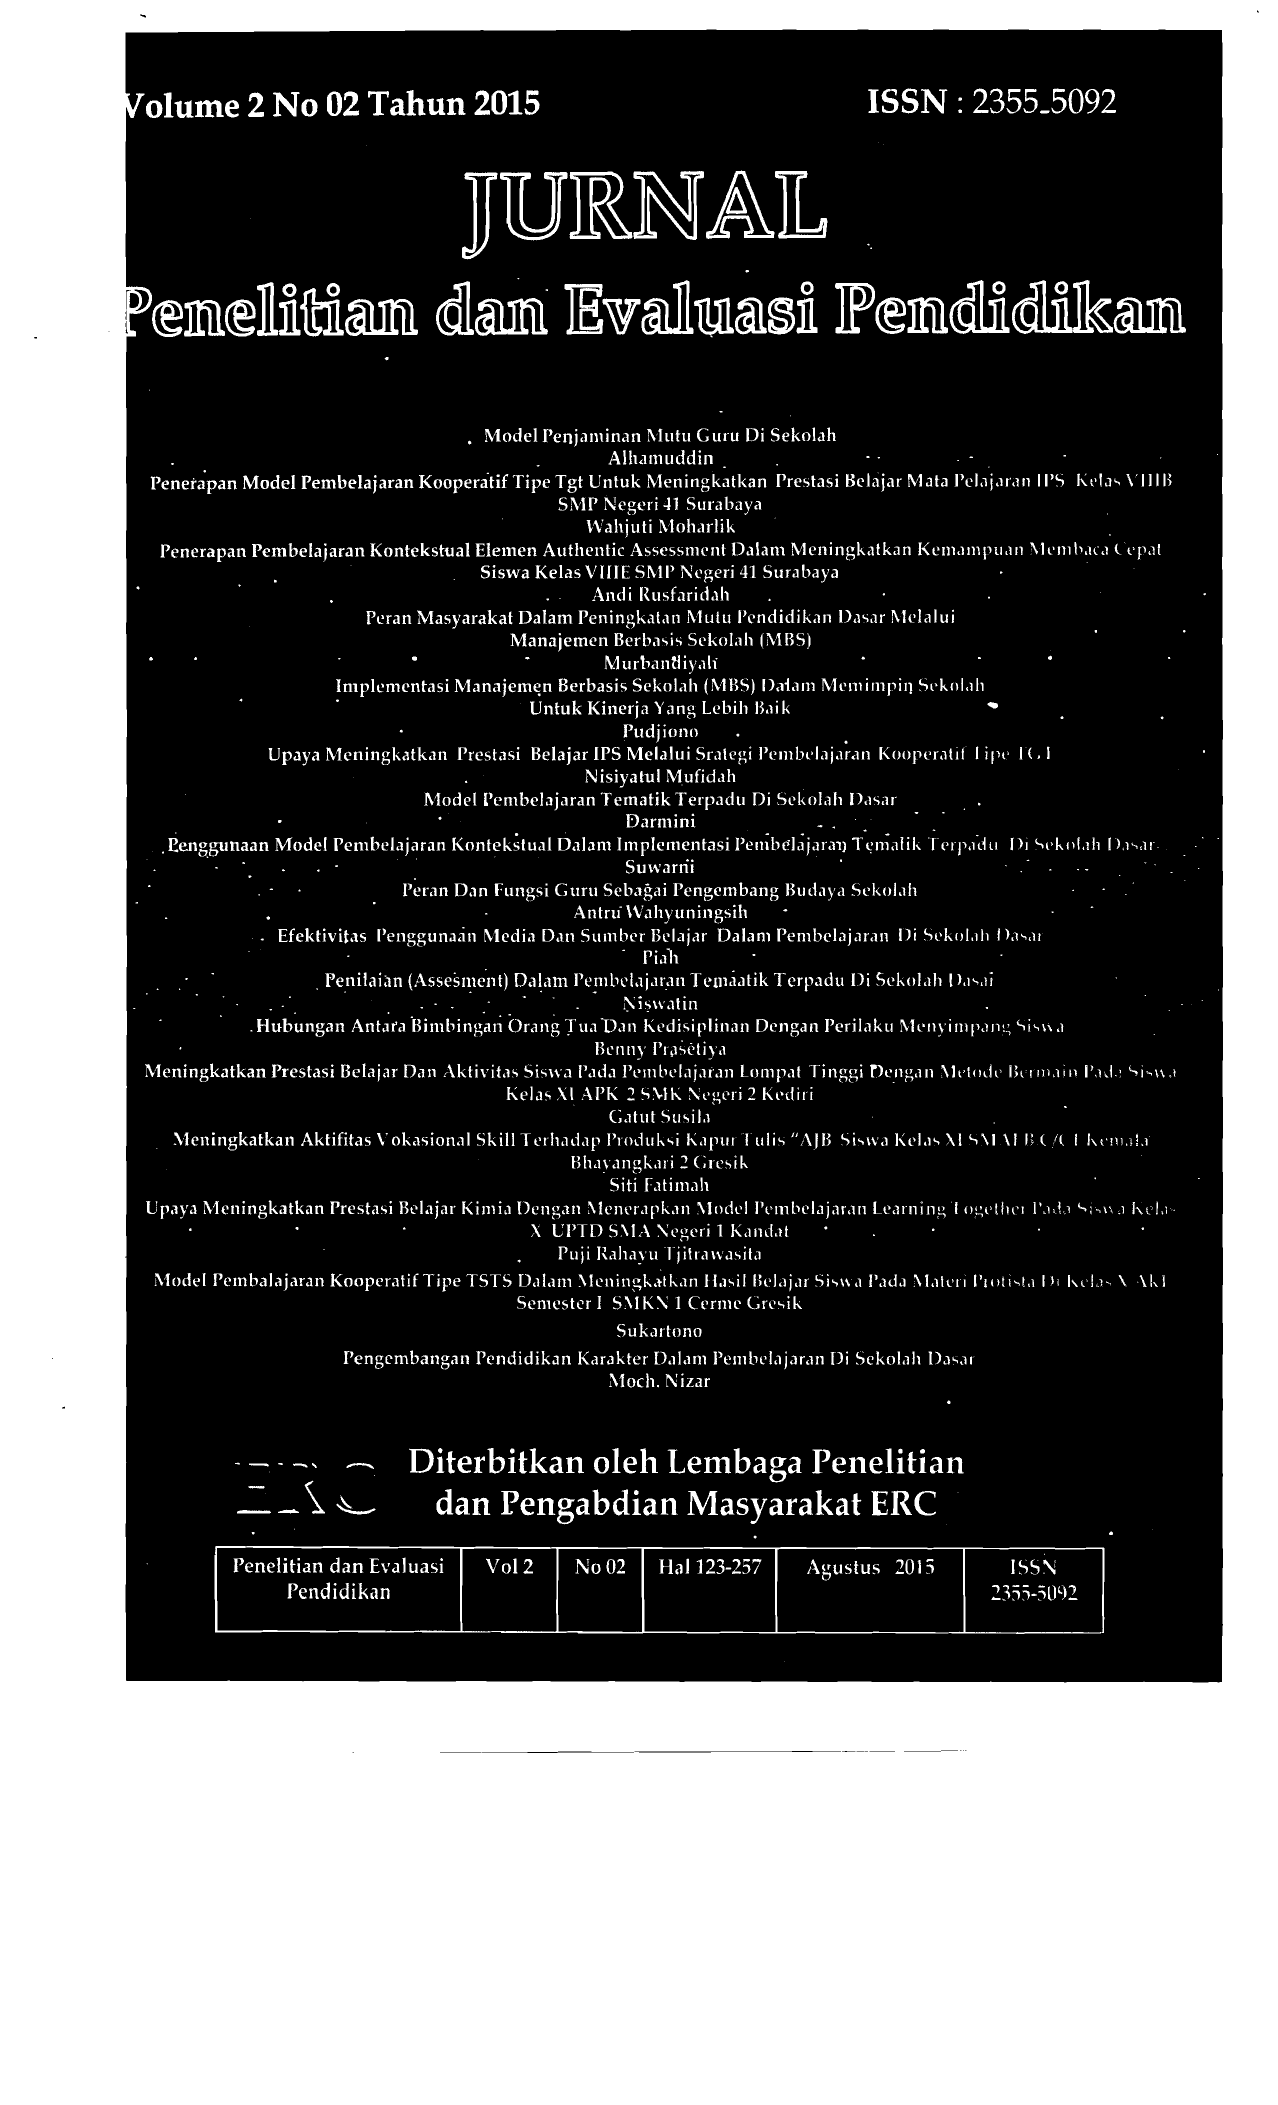 1 I JURNAL PENELITIAN DAN EVALUASI PENDIDIKAN Volume 2 Nomor 02 Agustus 2015 ISSN 2355 5092 DAFTAR lSI Model Penjaminan Mutu Guru Di Sekolah Alhamuddin